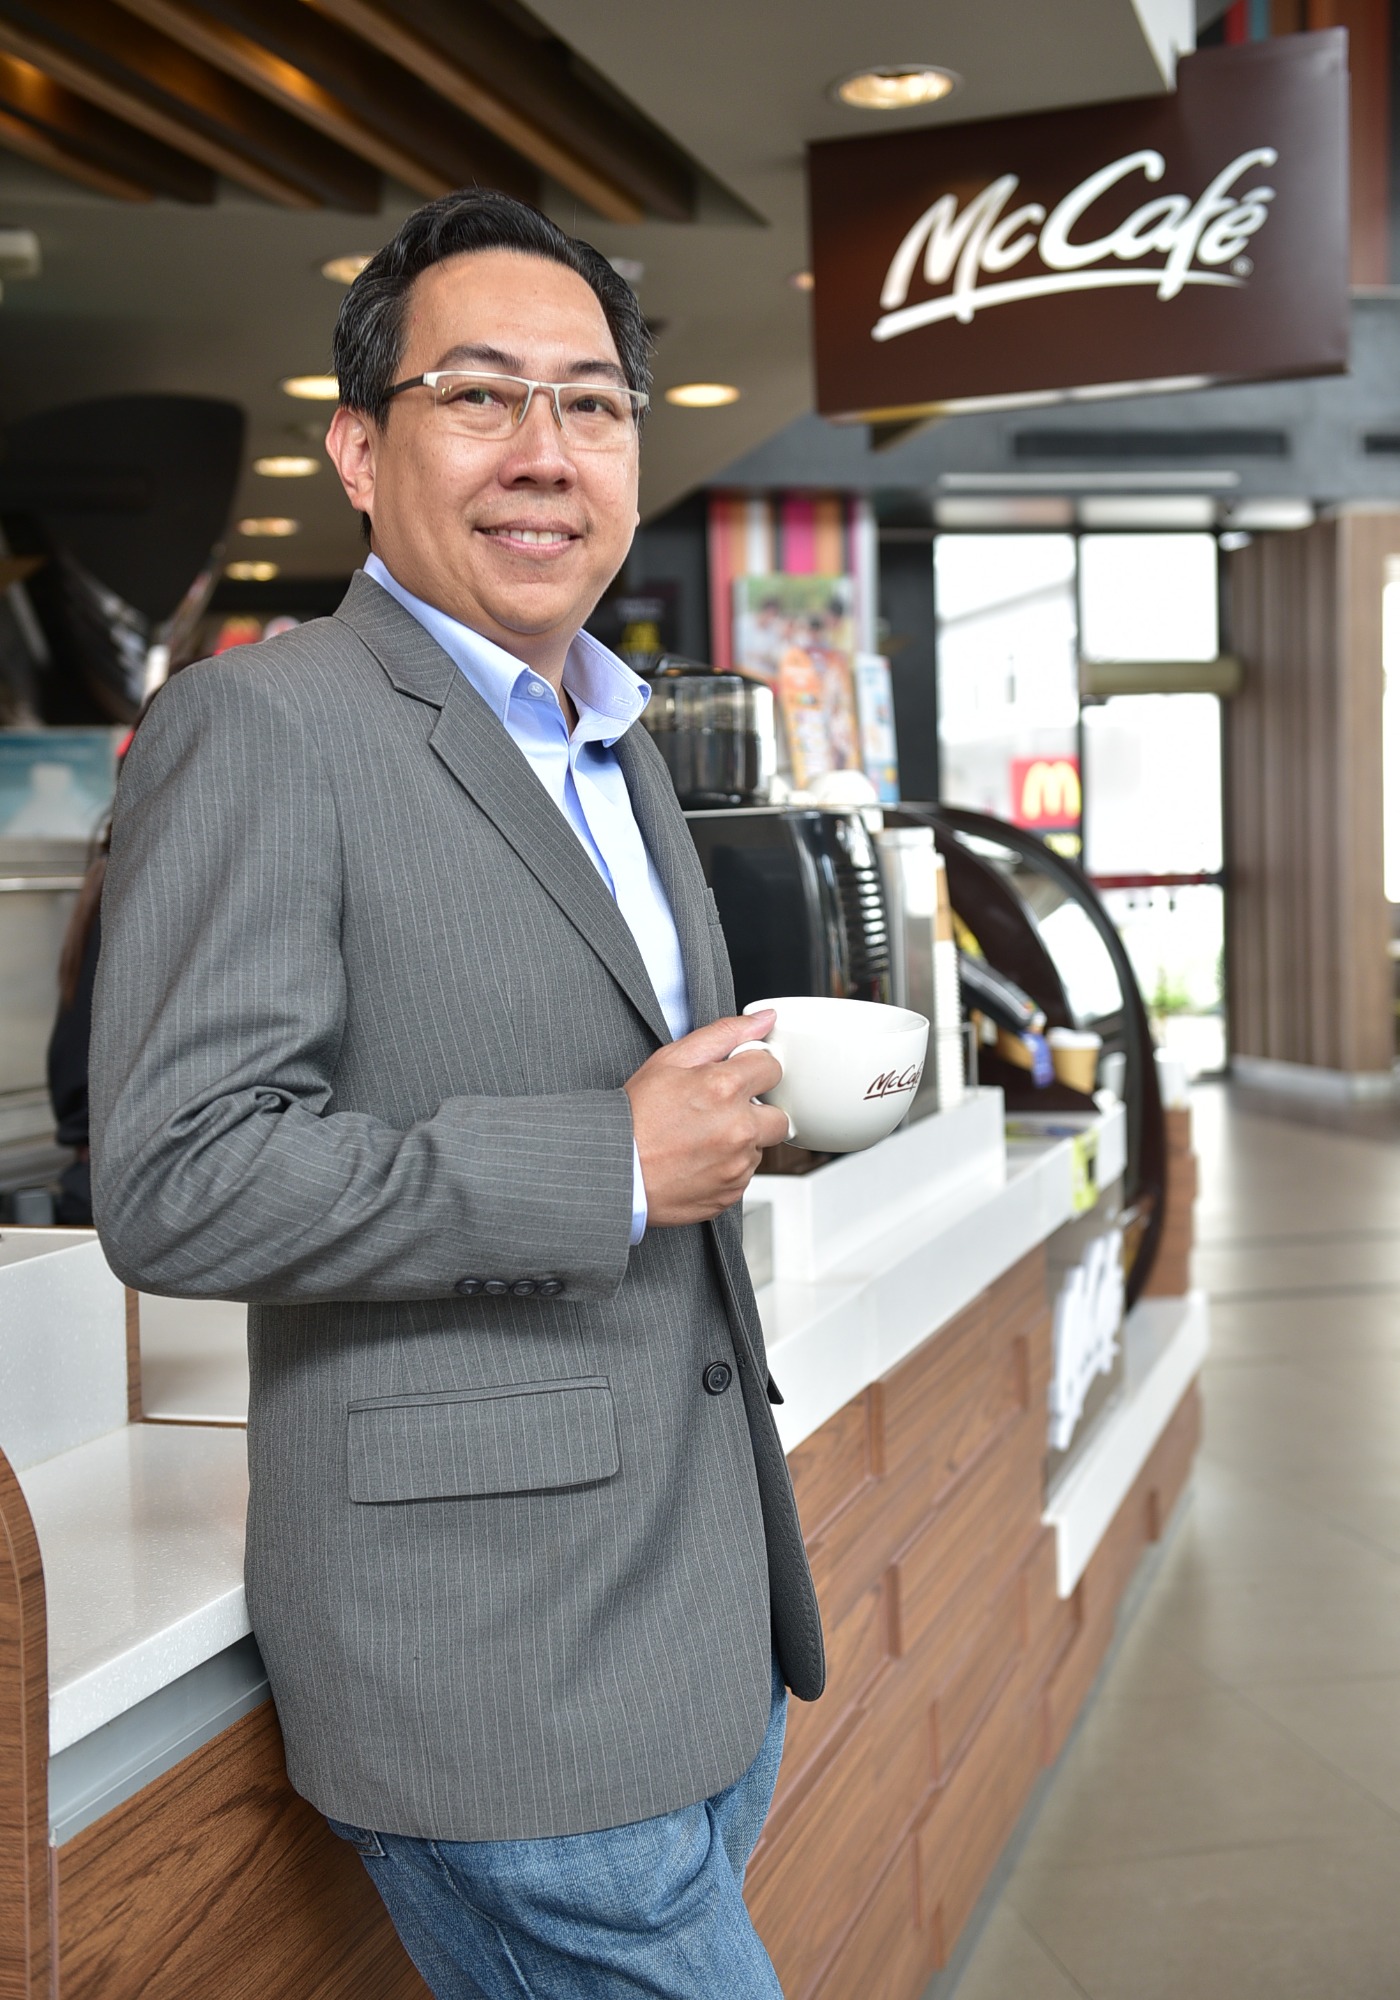 ธันยเชษฐ์ เอกเวชวิท ผู้บริหาร McDonald's Thailand